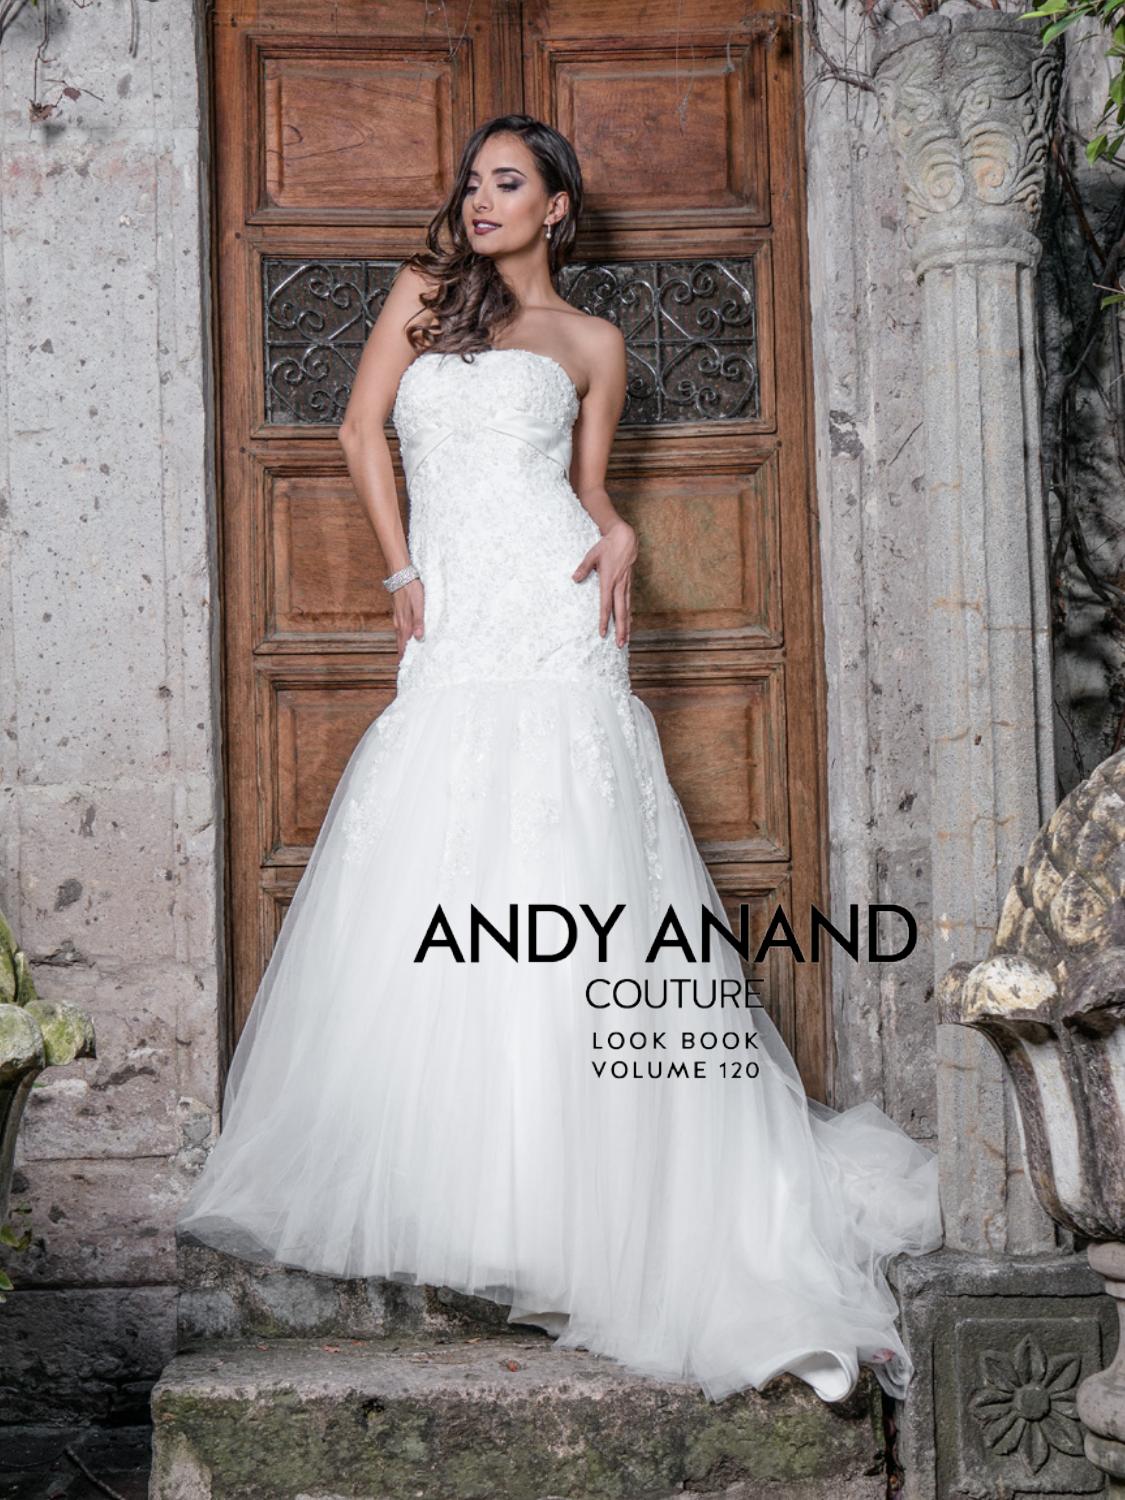 意大利婚纱礼服定制画册/素材/书籍/目录/杂志/婚纱定制品牌有哪些Andy Anand Couture2018图片